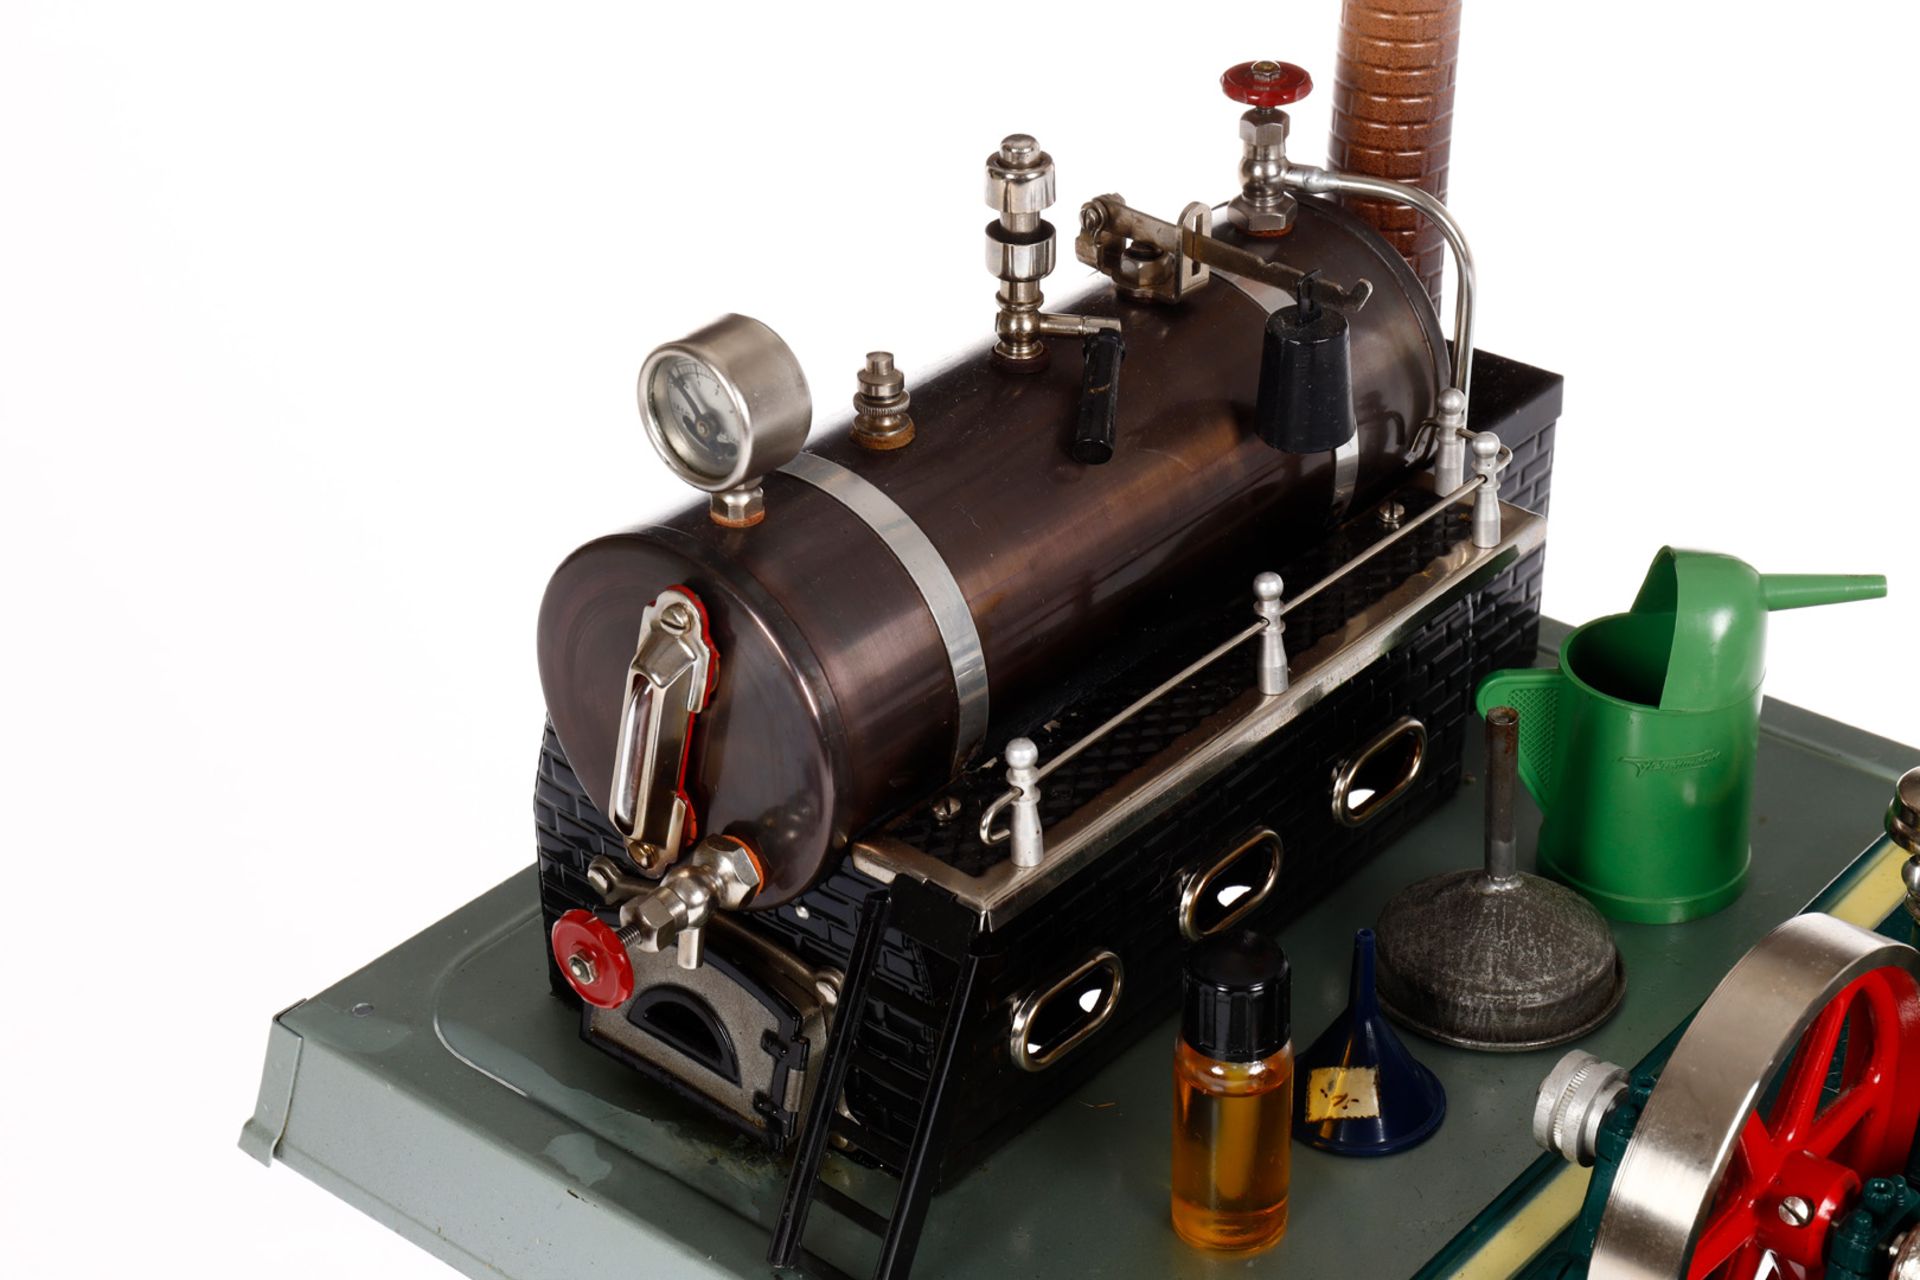 Fleischmann Dampfmaschine 125/4, liegender patinierter Kessel, KD 6, mit Brenner, Armaturen, Leiter, - Bild 2 aus 6